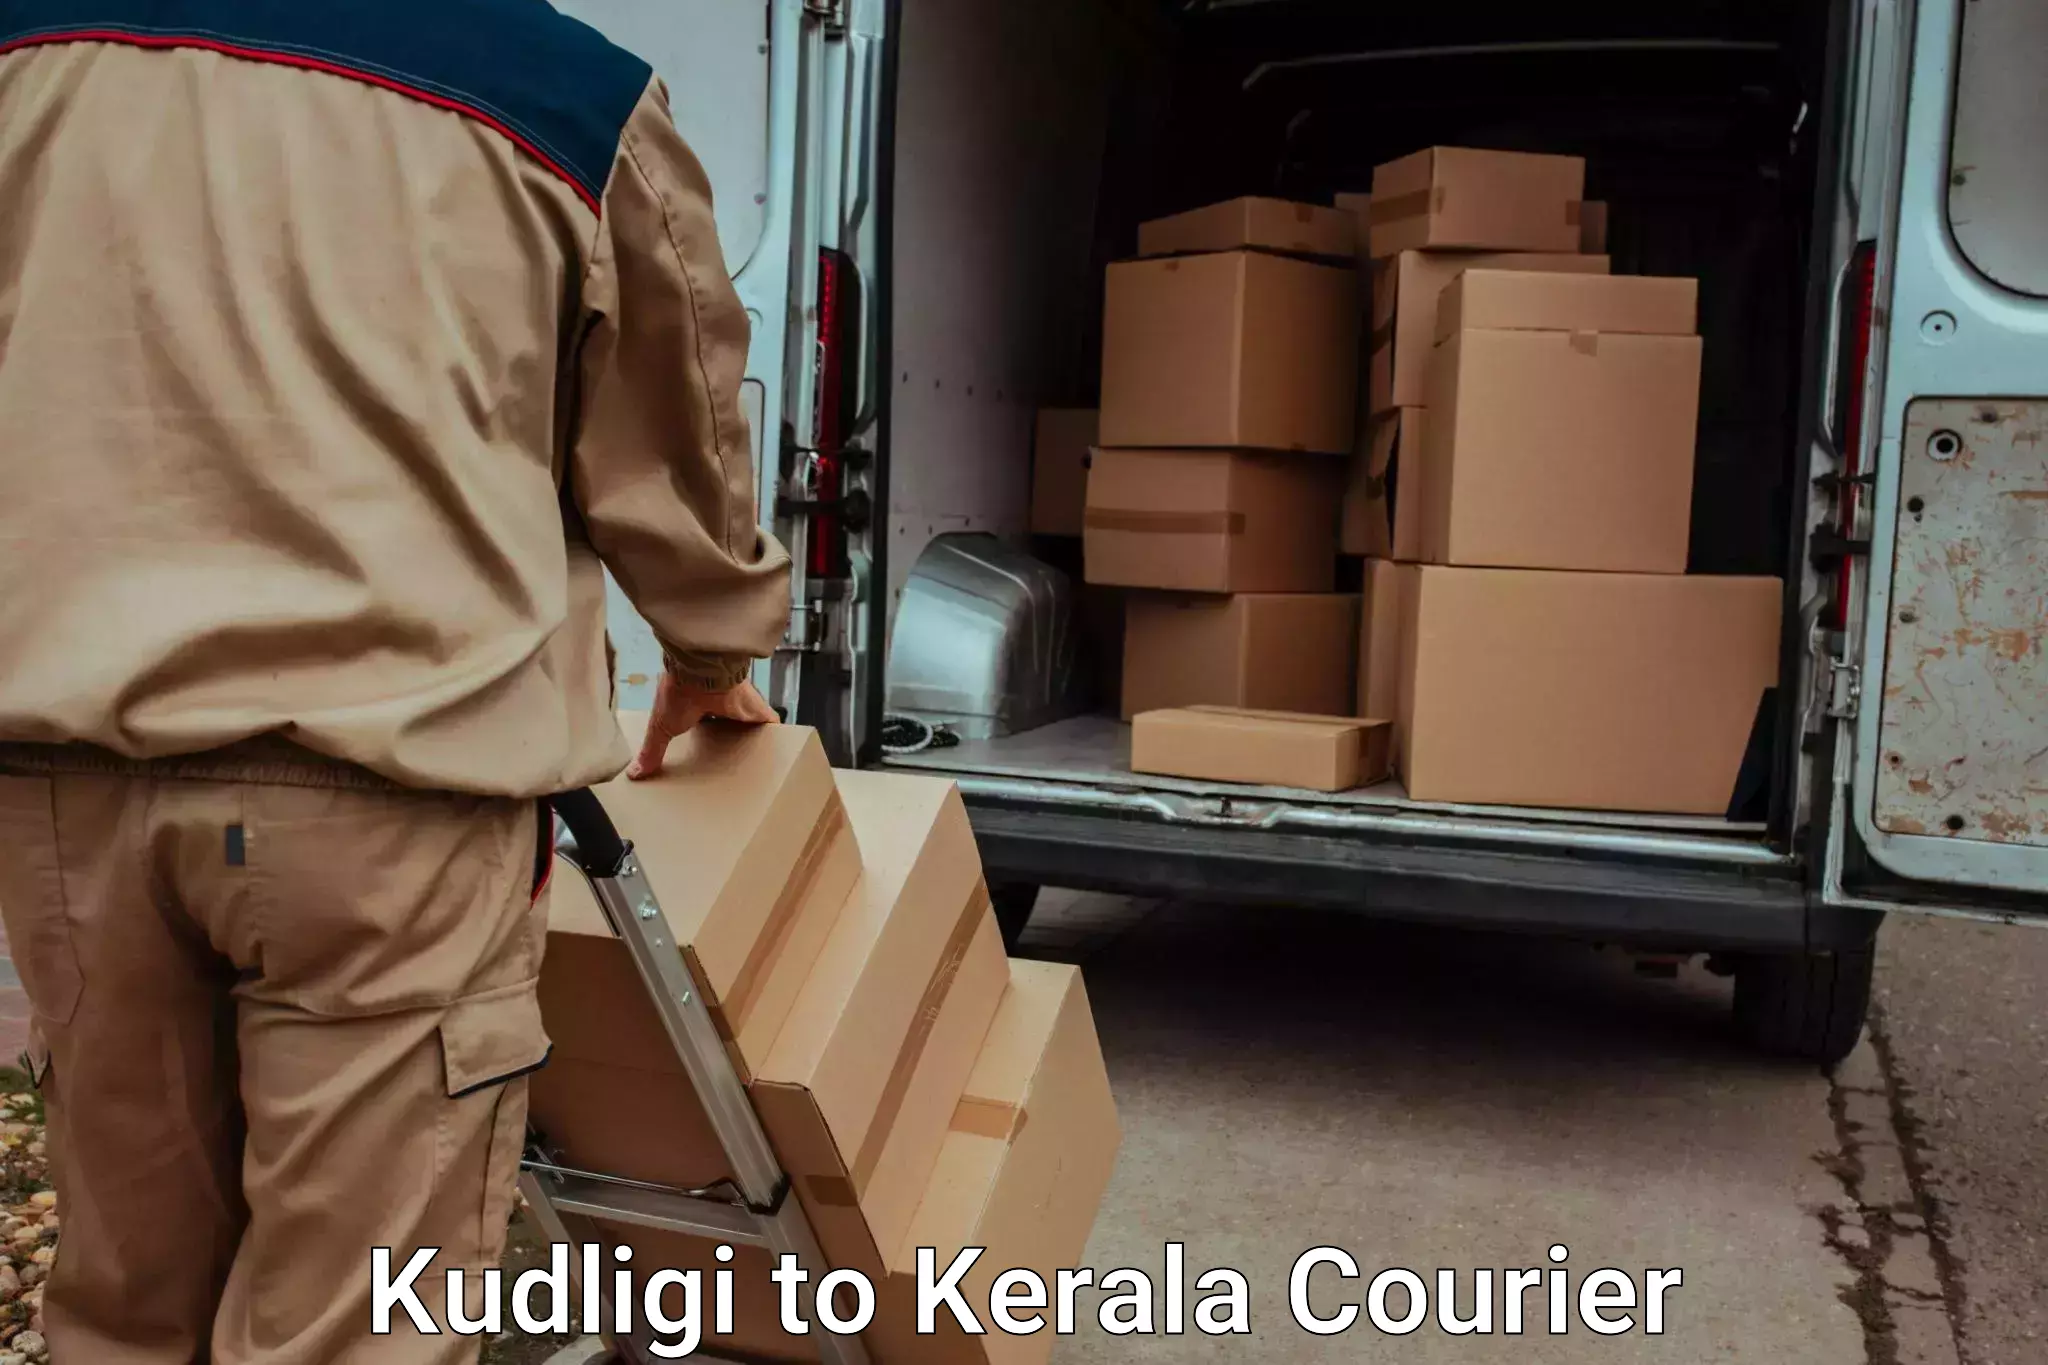 Personal effects shipping Kudligi to Kozhikode